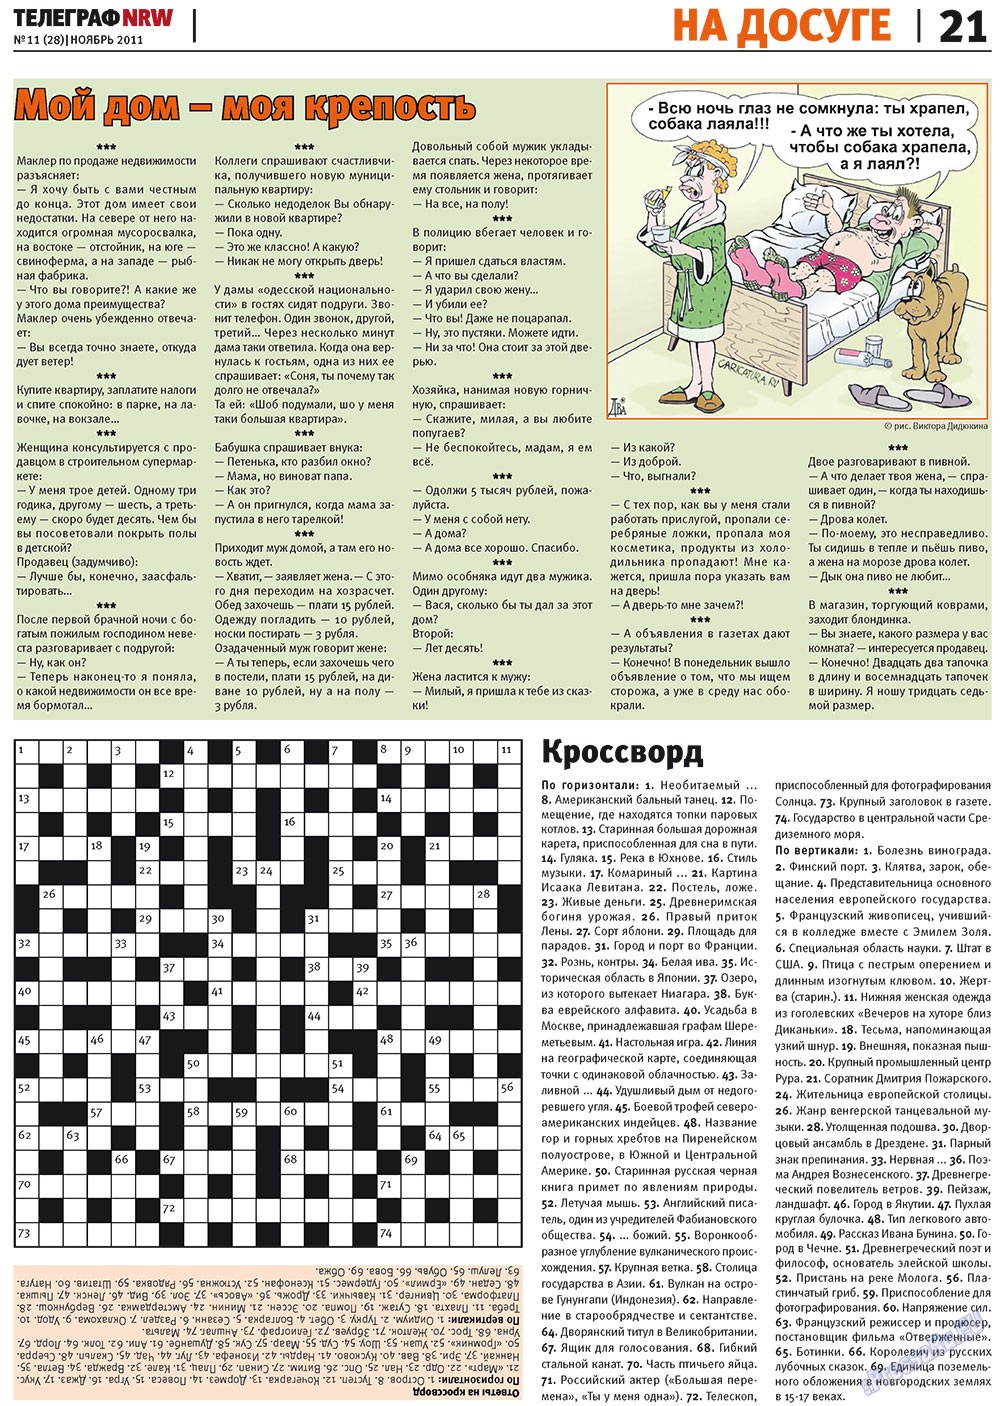 Телеграф NRW (газета). 2011 год, номер 11, стр. 21